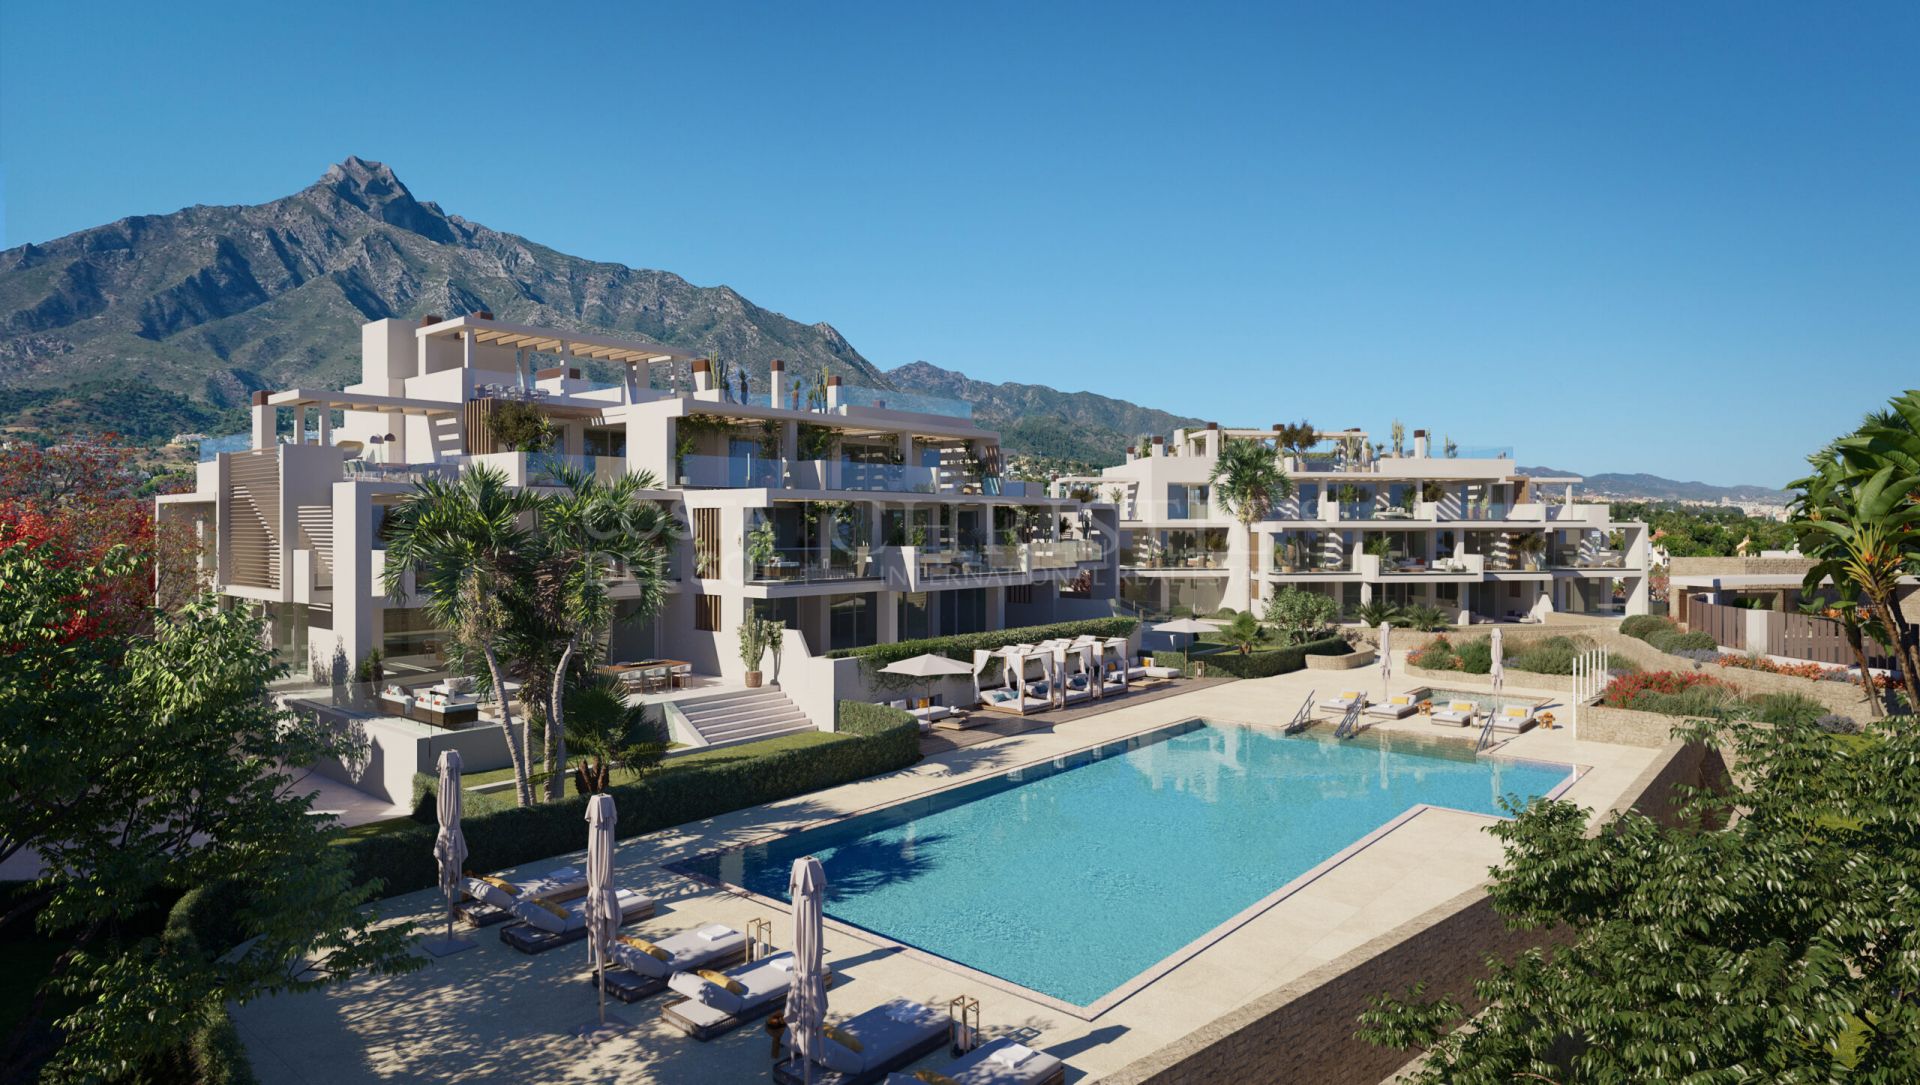 Earh, Señorio de Marbella, Marbella Gouden Mijl - Exclusief complete appartementen en nieuwe woningen in Milla de Oro | Christie’s International Real Estate